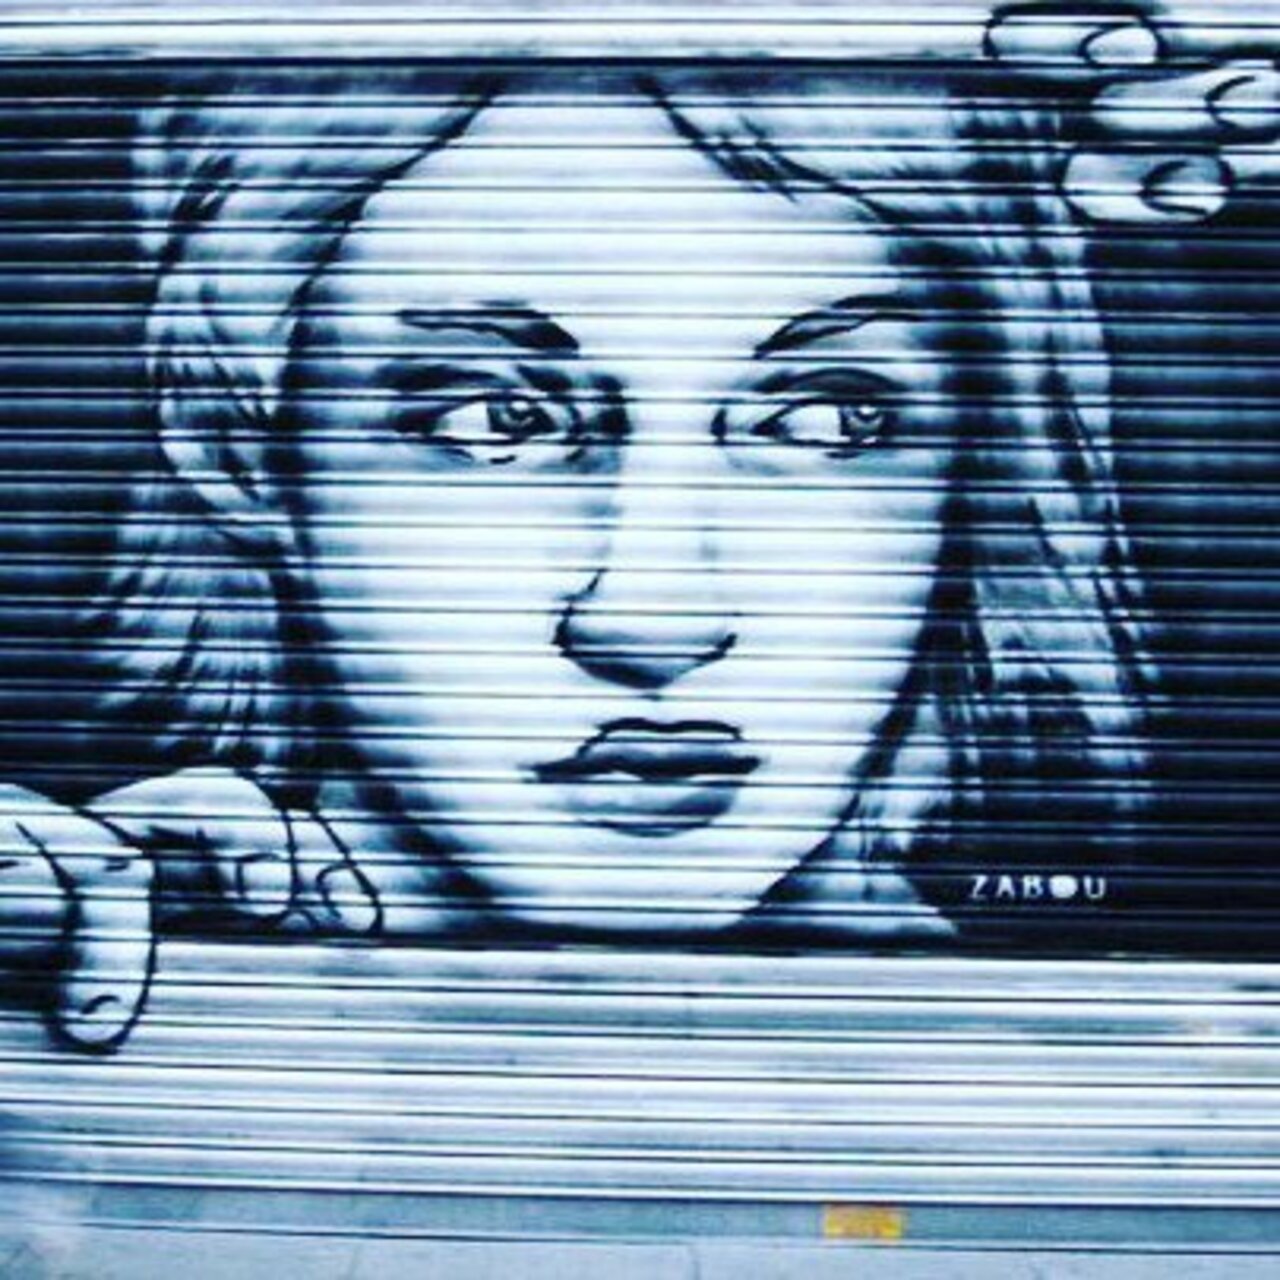 #zabouartist #streetart #art #graffiti #wallart #urbanart #zabou #londonstreetart #paris #streetartlondon #streetar… https://t.co/KRQ9qQv9DH